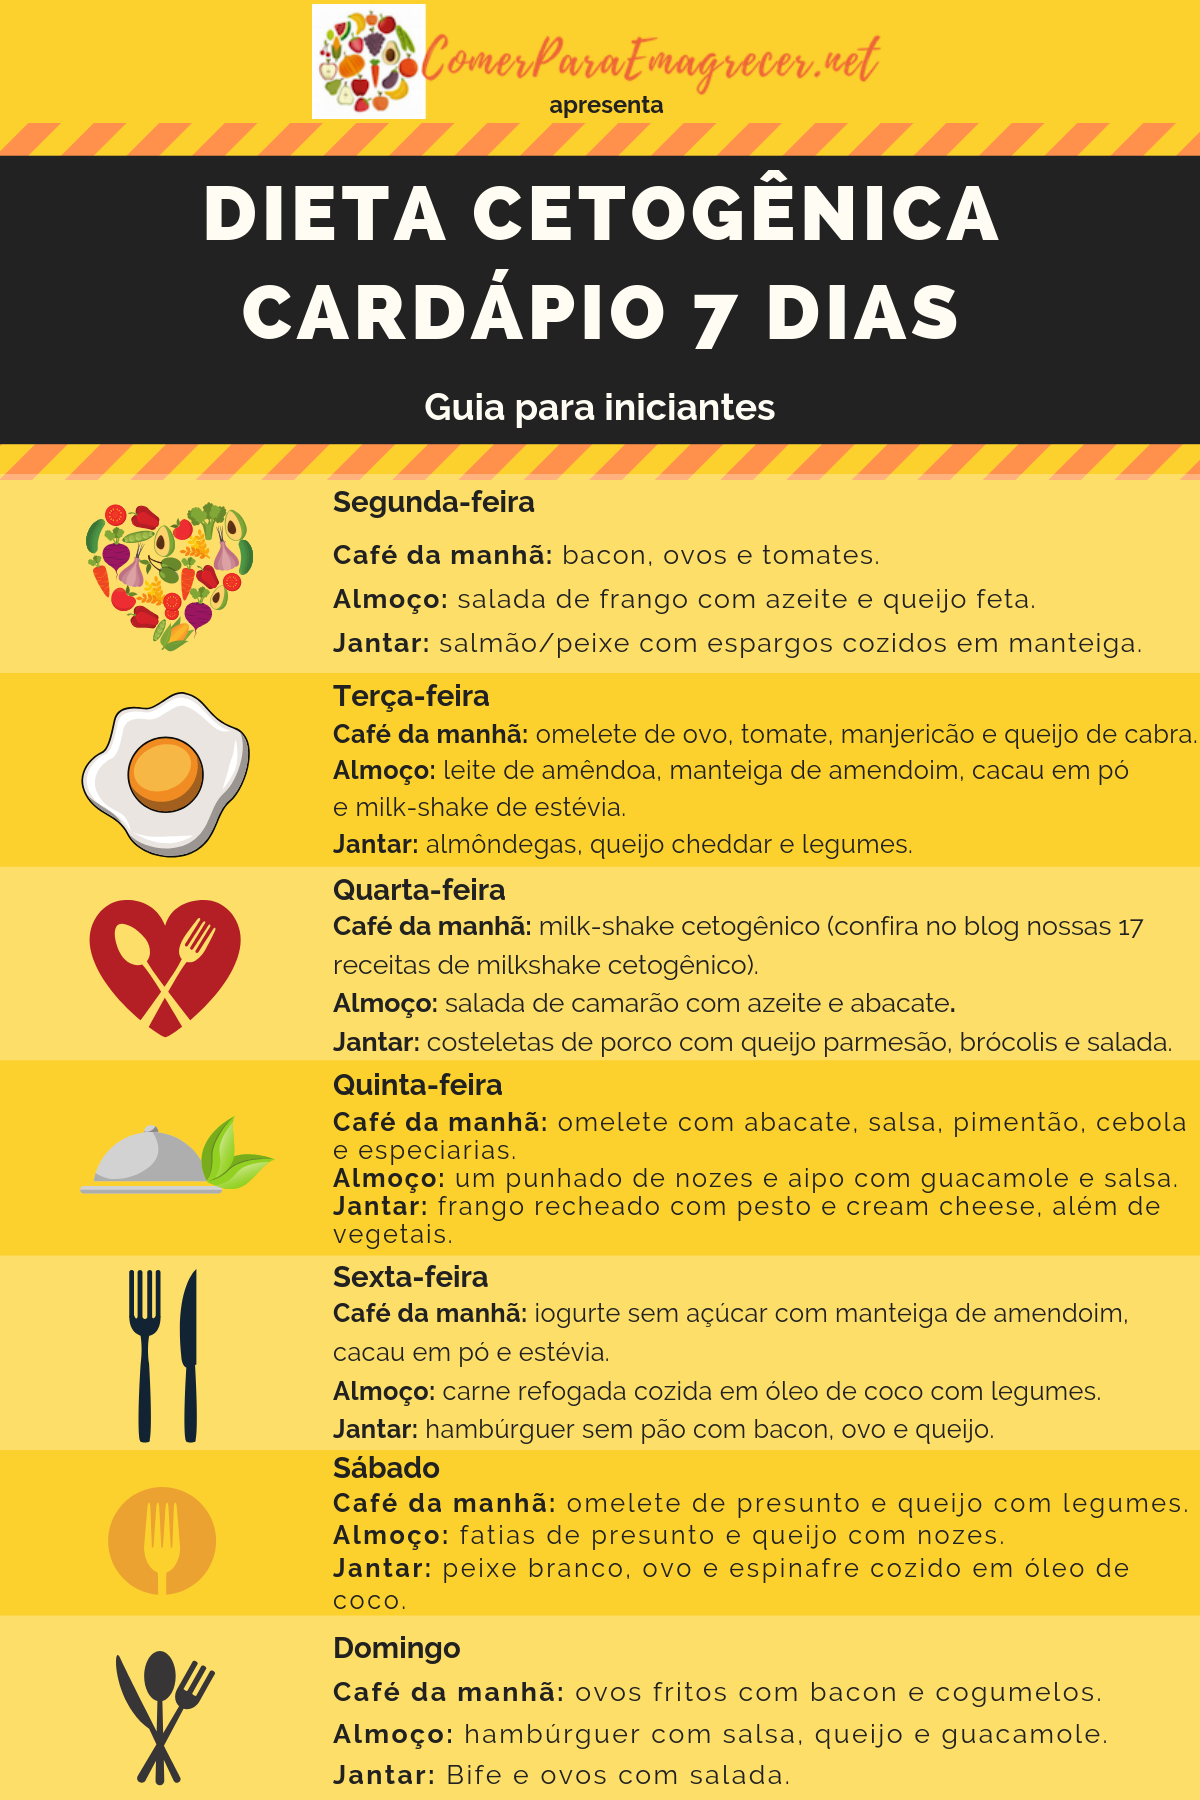 dieta cetogenica cardapio semanal - dieta cetogênica cardápio 7 dias simples